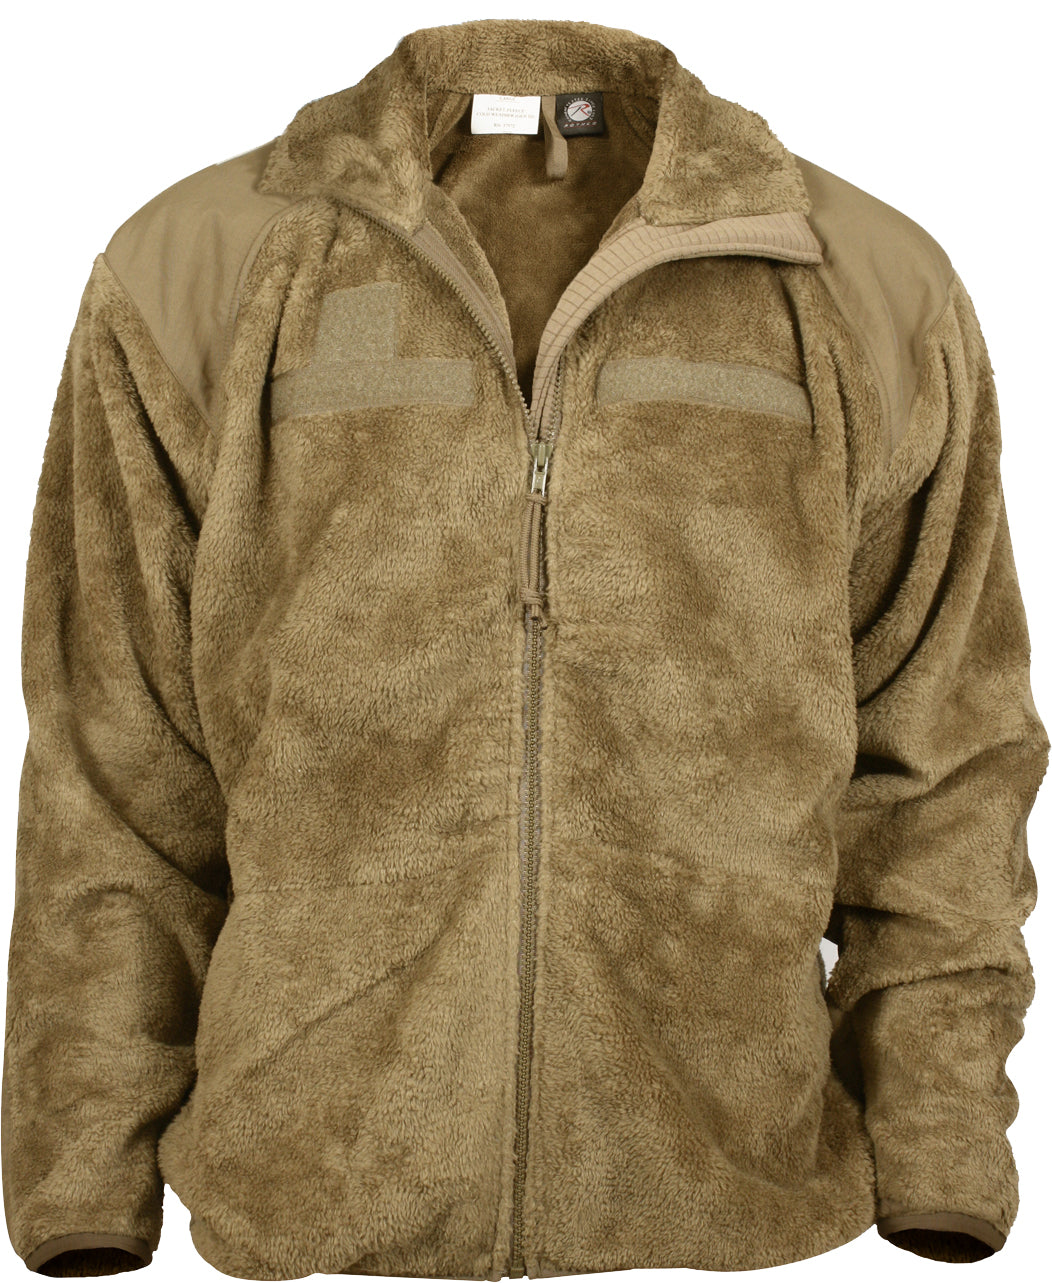 Coyote Brown - Generation III Level 3 ECWCS Polar Fleece Jacket/Liner